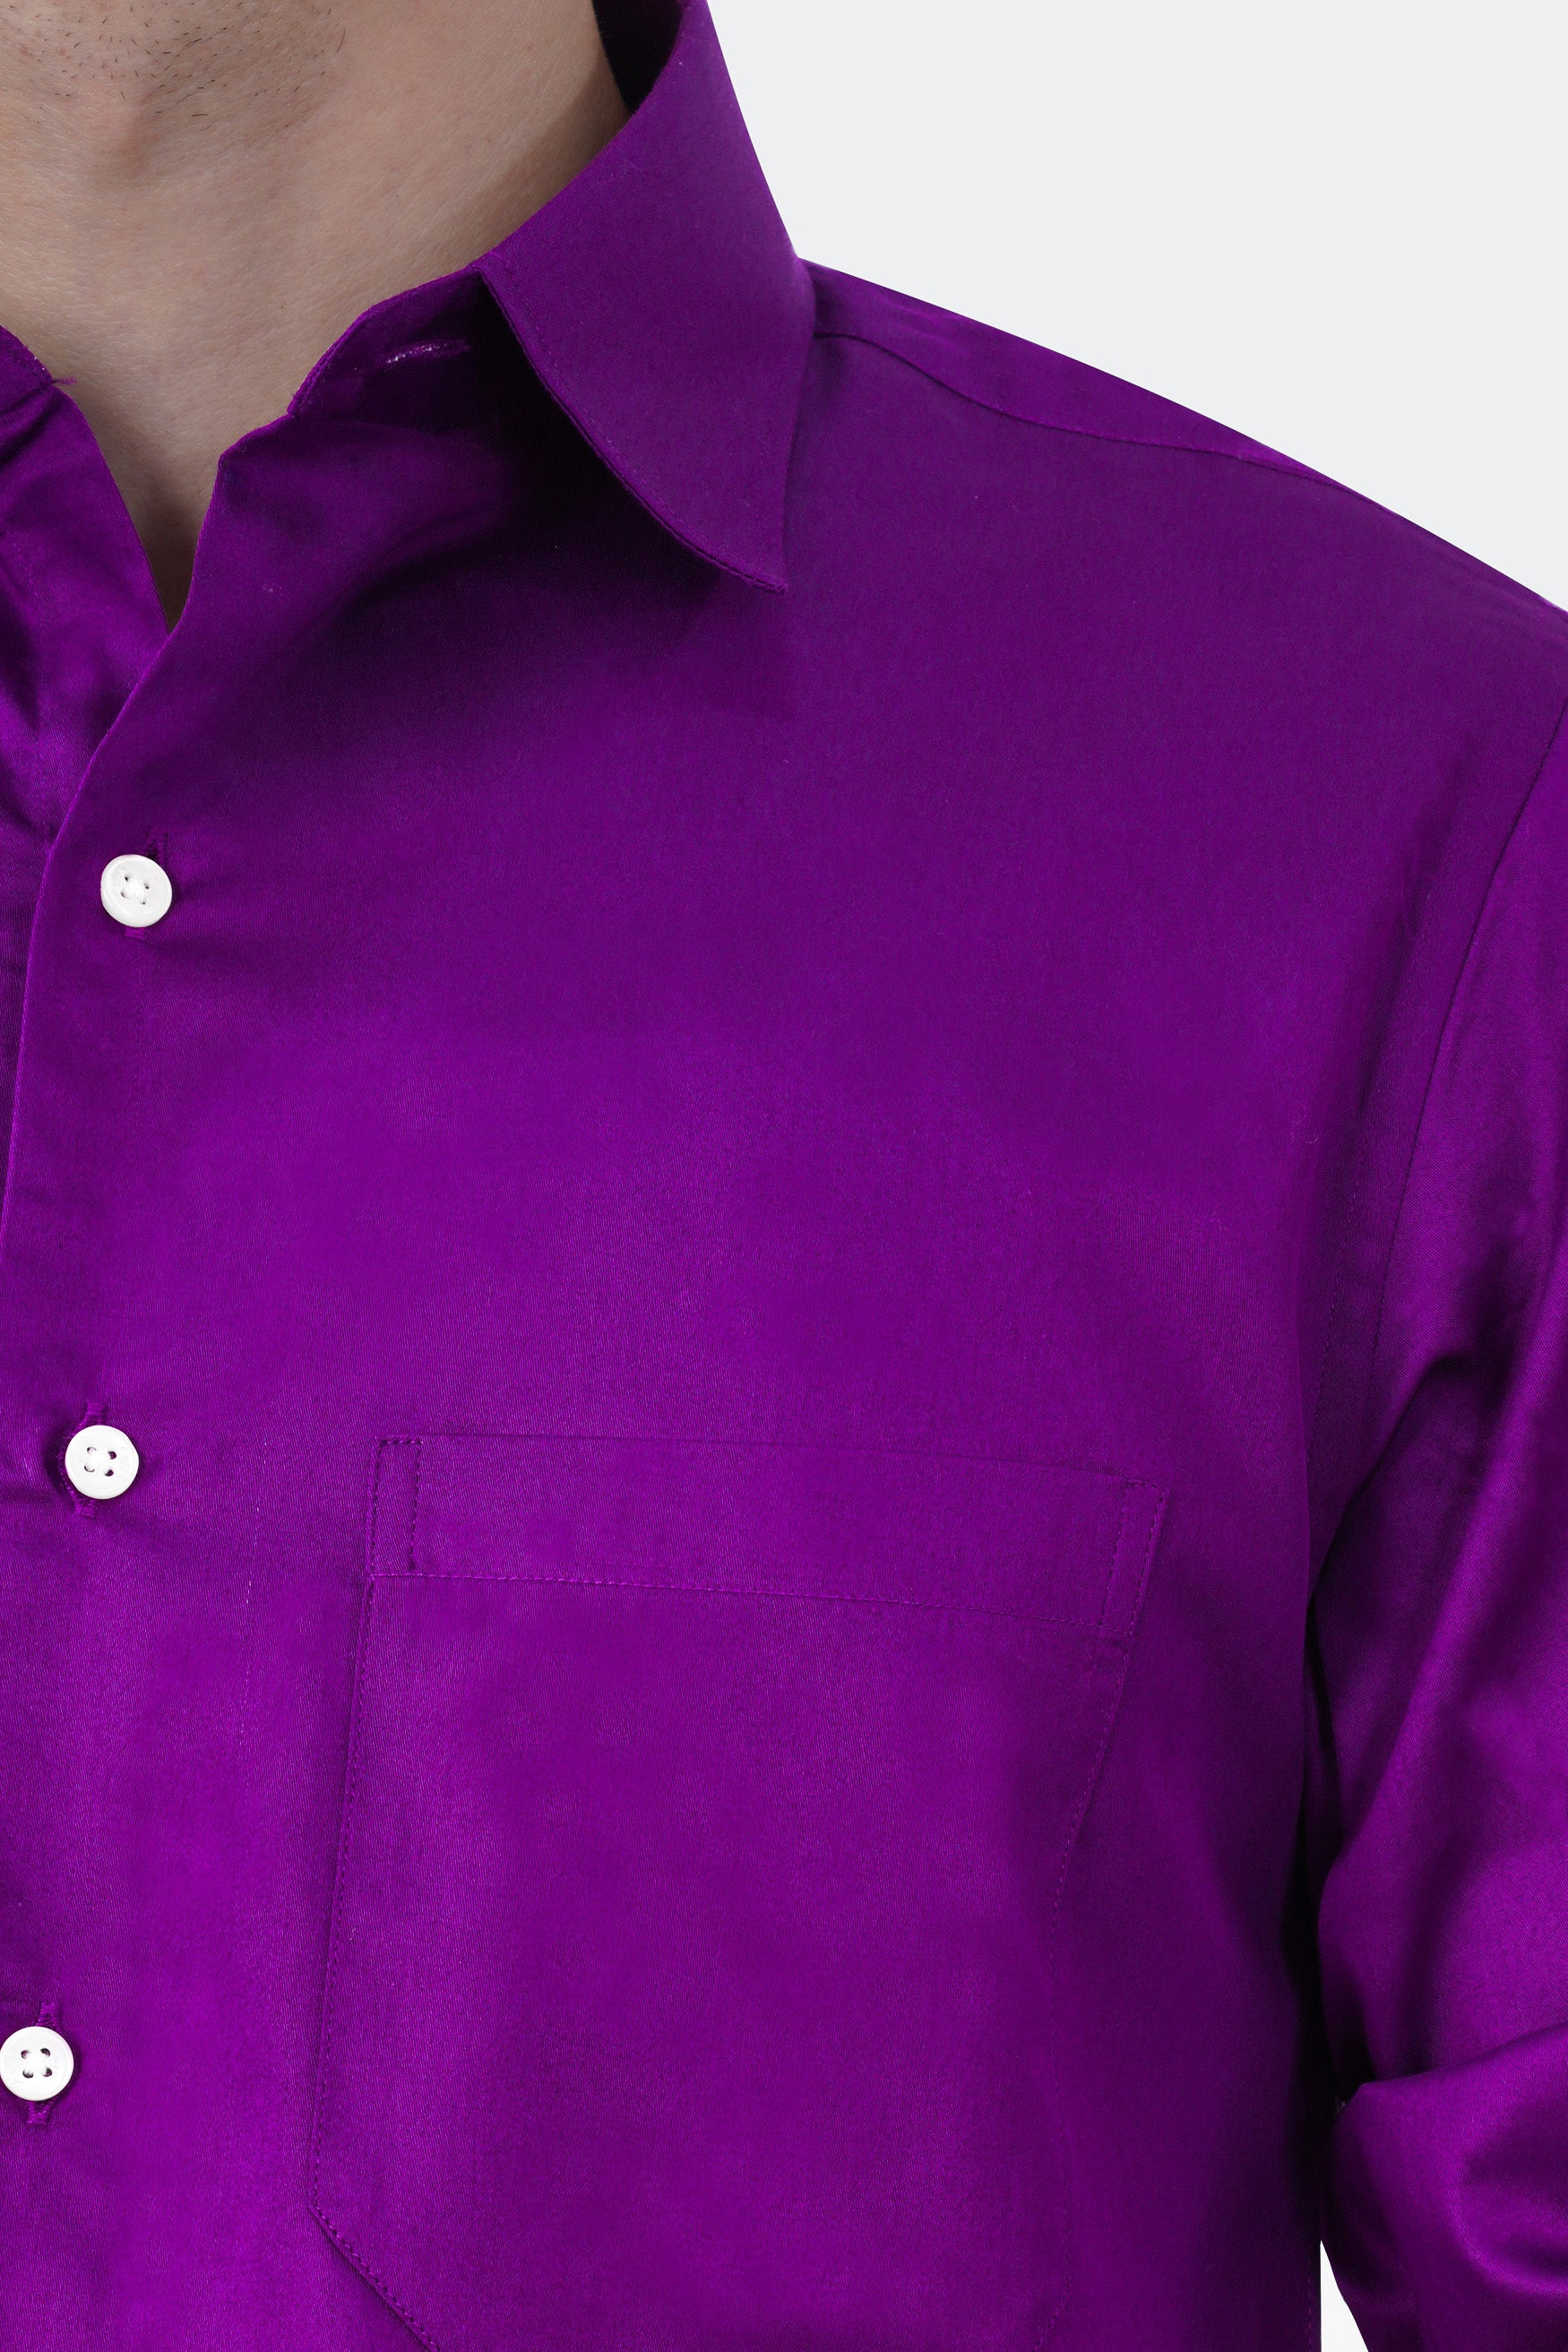 Palatinate Purple Subtle Sheen Super Soft Premium Cotton Shirt 11741-38, 11741-H-38, 11741-39, 11741-H-39, 11741-40, 11741-H-40, 11741-42, 11741-H-42, 11741-44, 11741-H-44, 11741-46, 11741-H-46, 11741-48, 11741-H-48, 11741-50, 11741-H-50, 11741-52, 11741-H-52